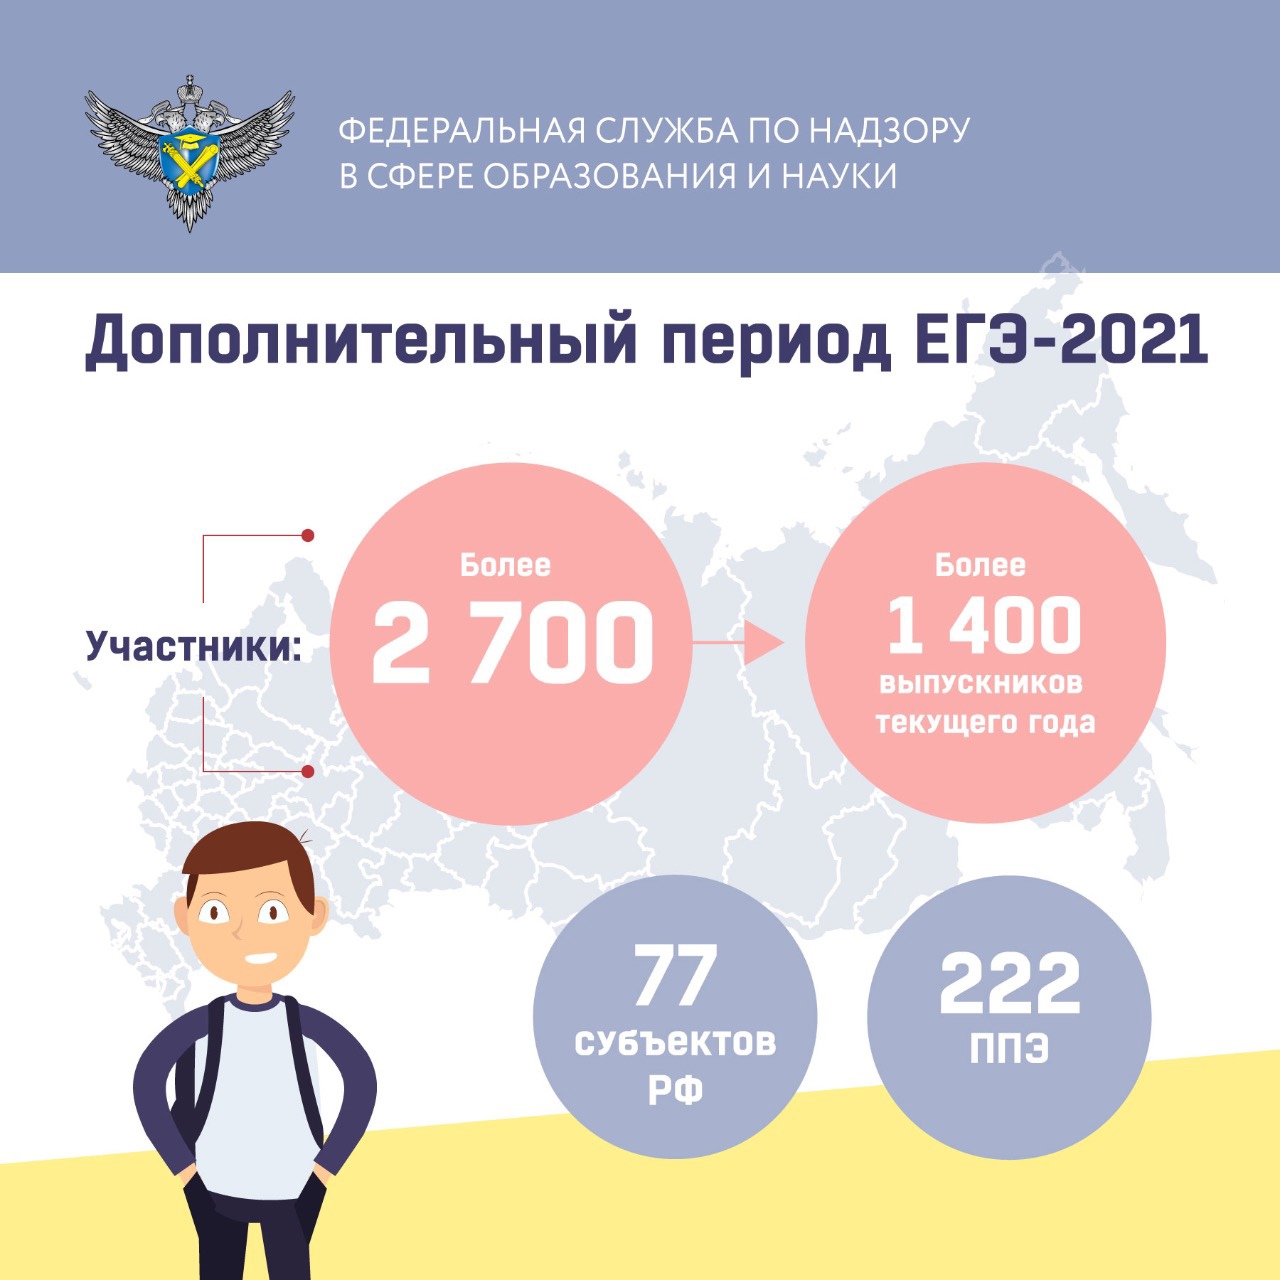 Вопросы образования 2021. Дополнительный период ЕГЭ. Инфографика 2021 год. Образование 2021 инфографика. Инфографика ученик года 2021.